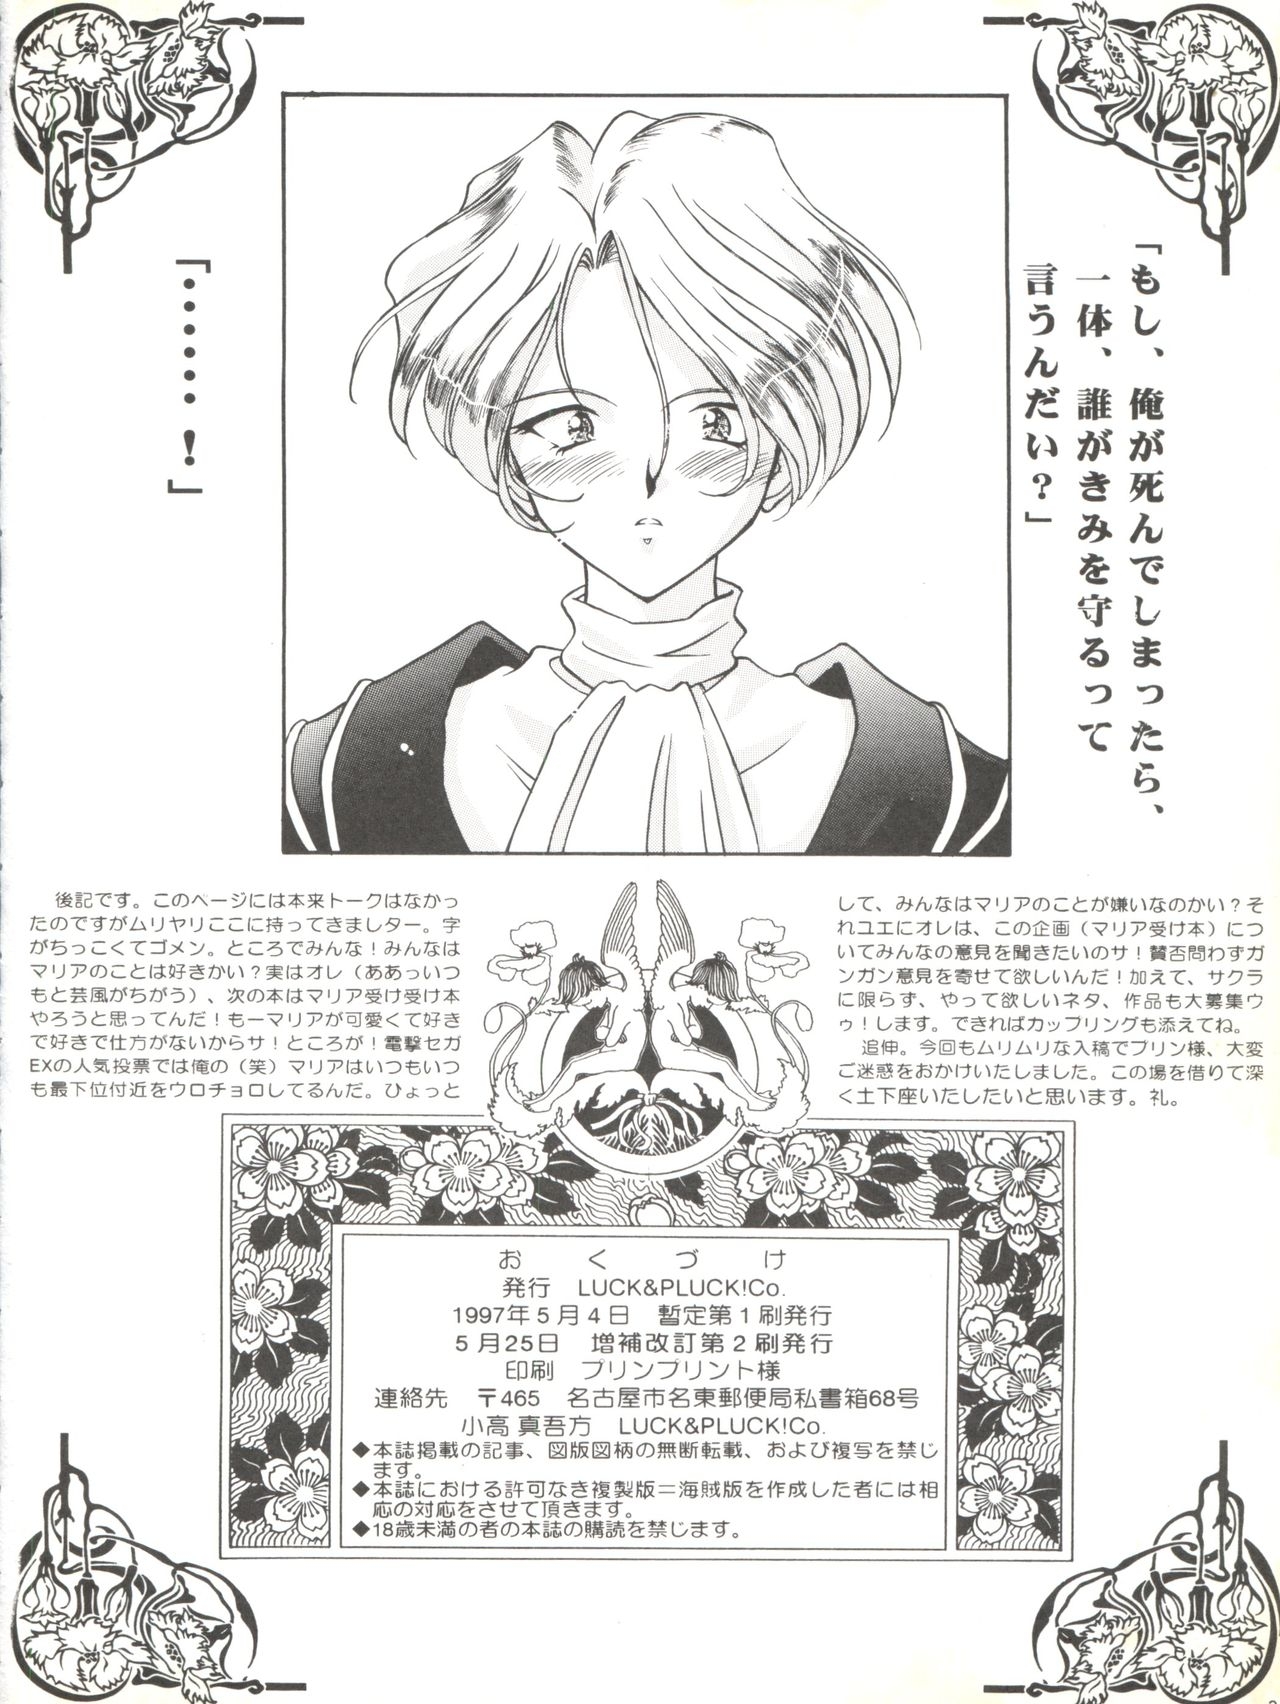 [LUCK&PLUCK!Co. (Amanomiya Haruka)] Li Kohran no Gottsuee Kanji (Sakura Wars) [1997-05-25] 34